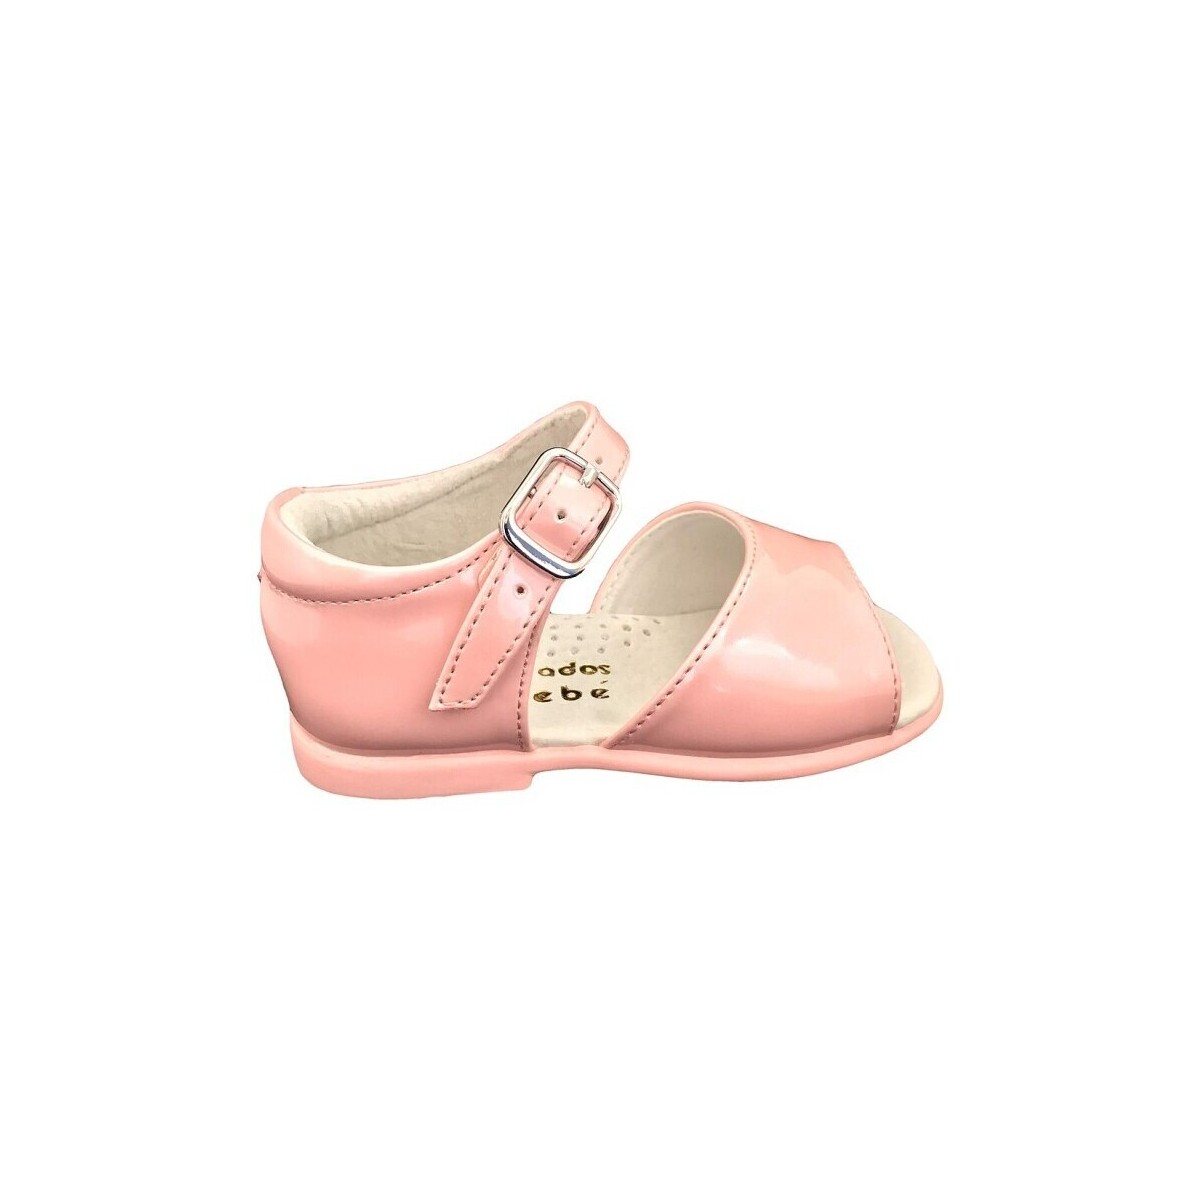 Pantofi Sandale D'bébé 24522-18 roz